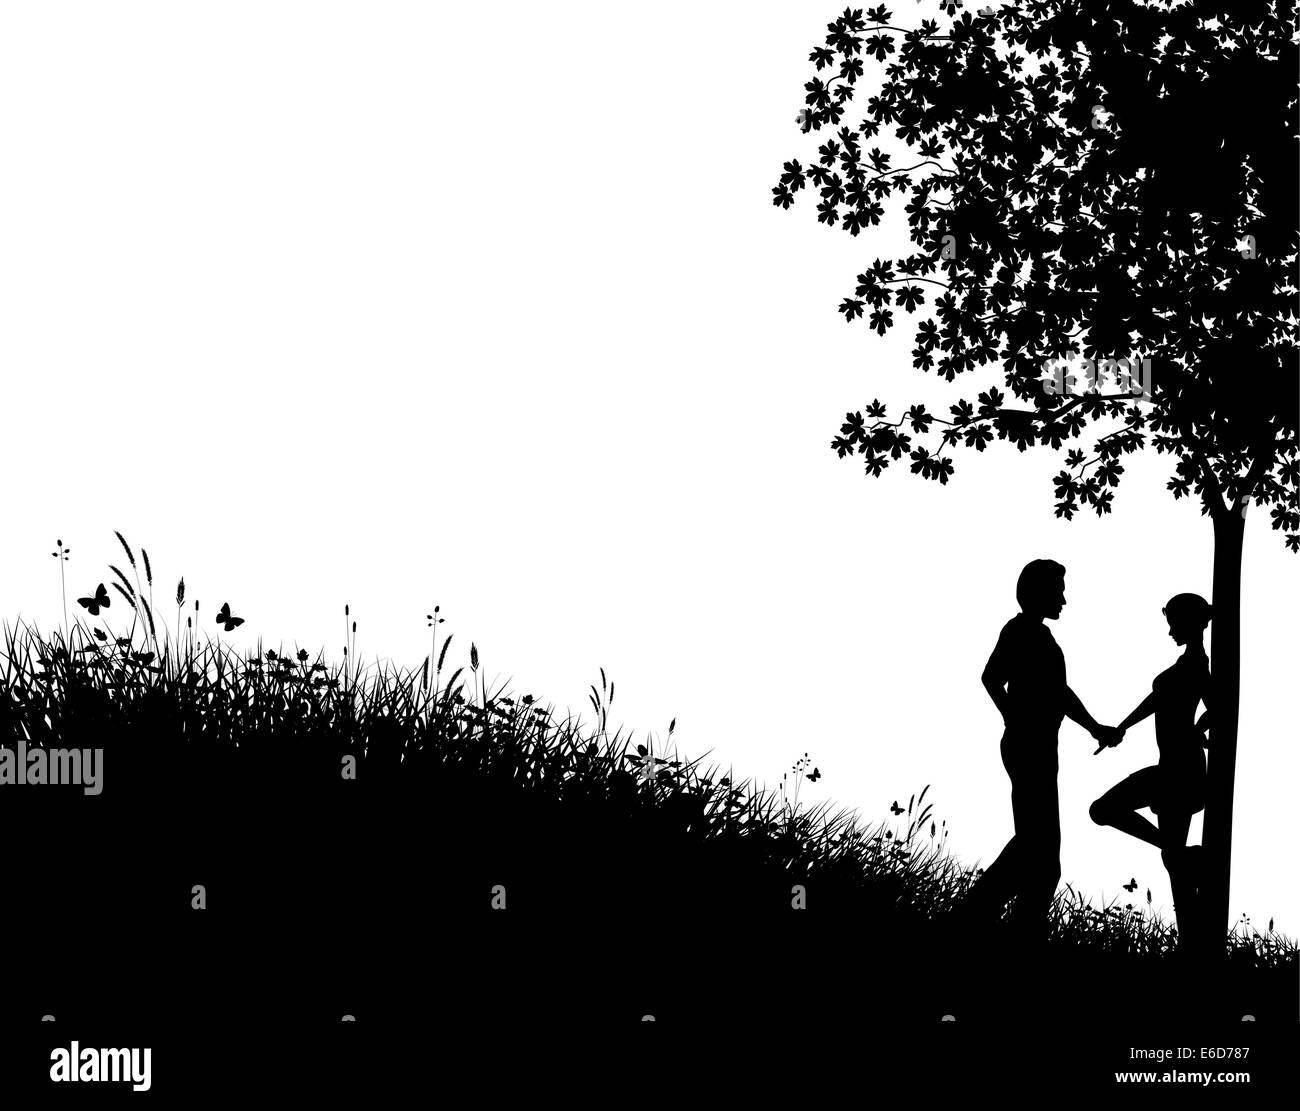 Vecteur modifiable silhouette d'un jeune couple dans un champ avec des gens, l'arbre et l'herbe comme éléments séparés Illustration de Vecteur